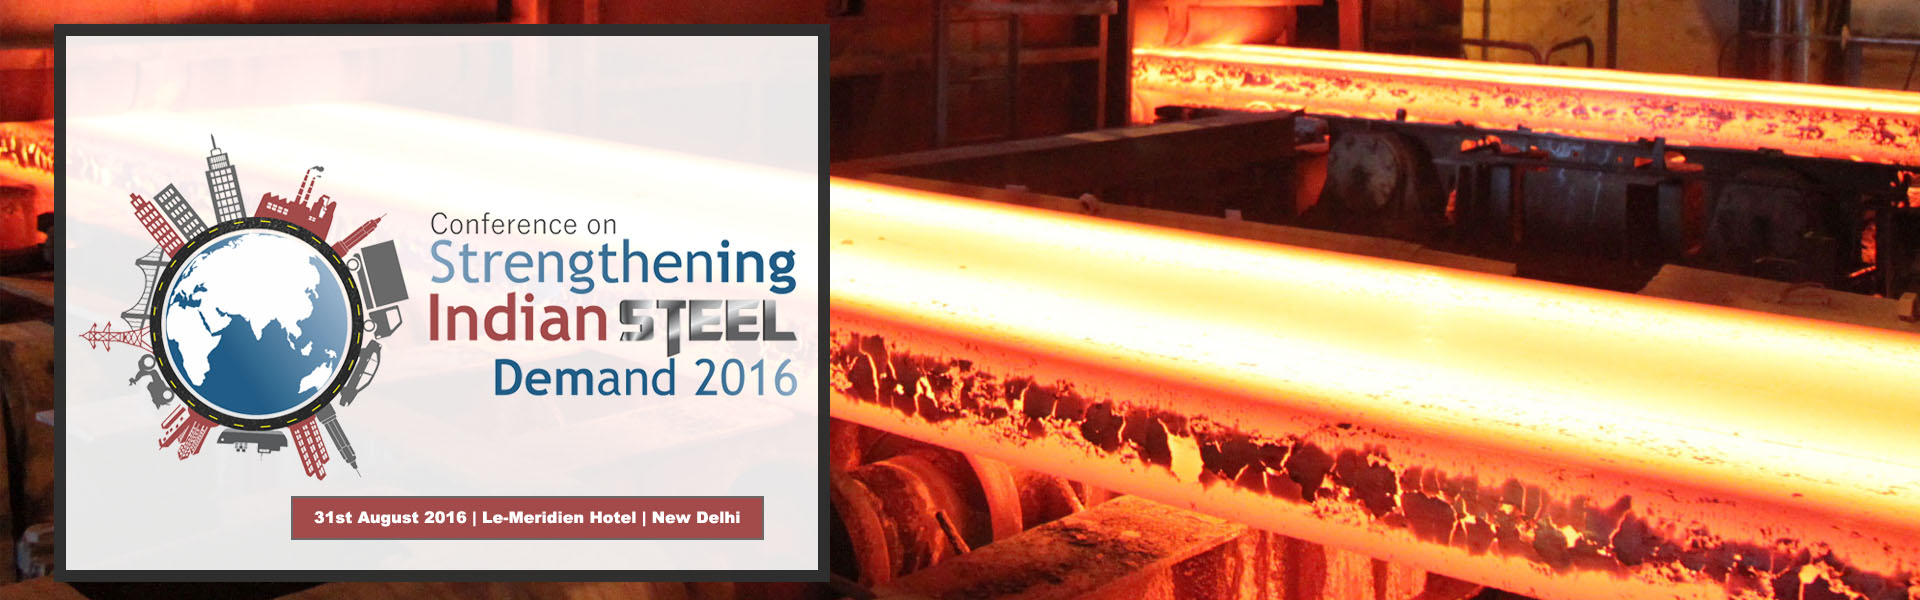 Strengthening Indian Steel Demand, 2016 